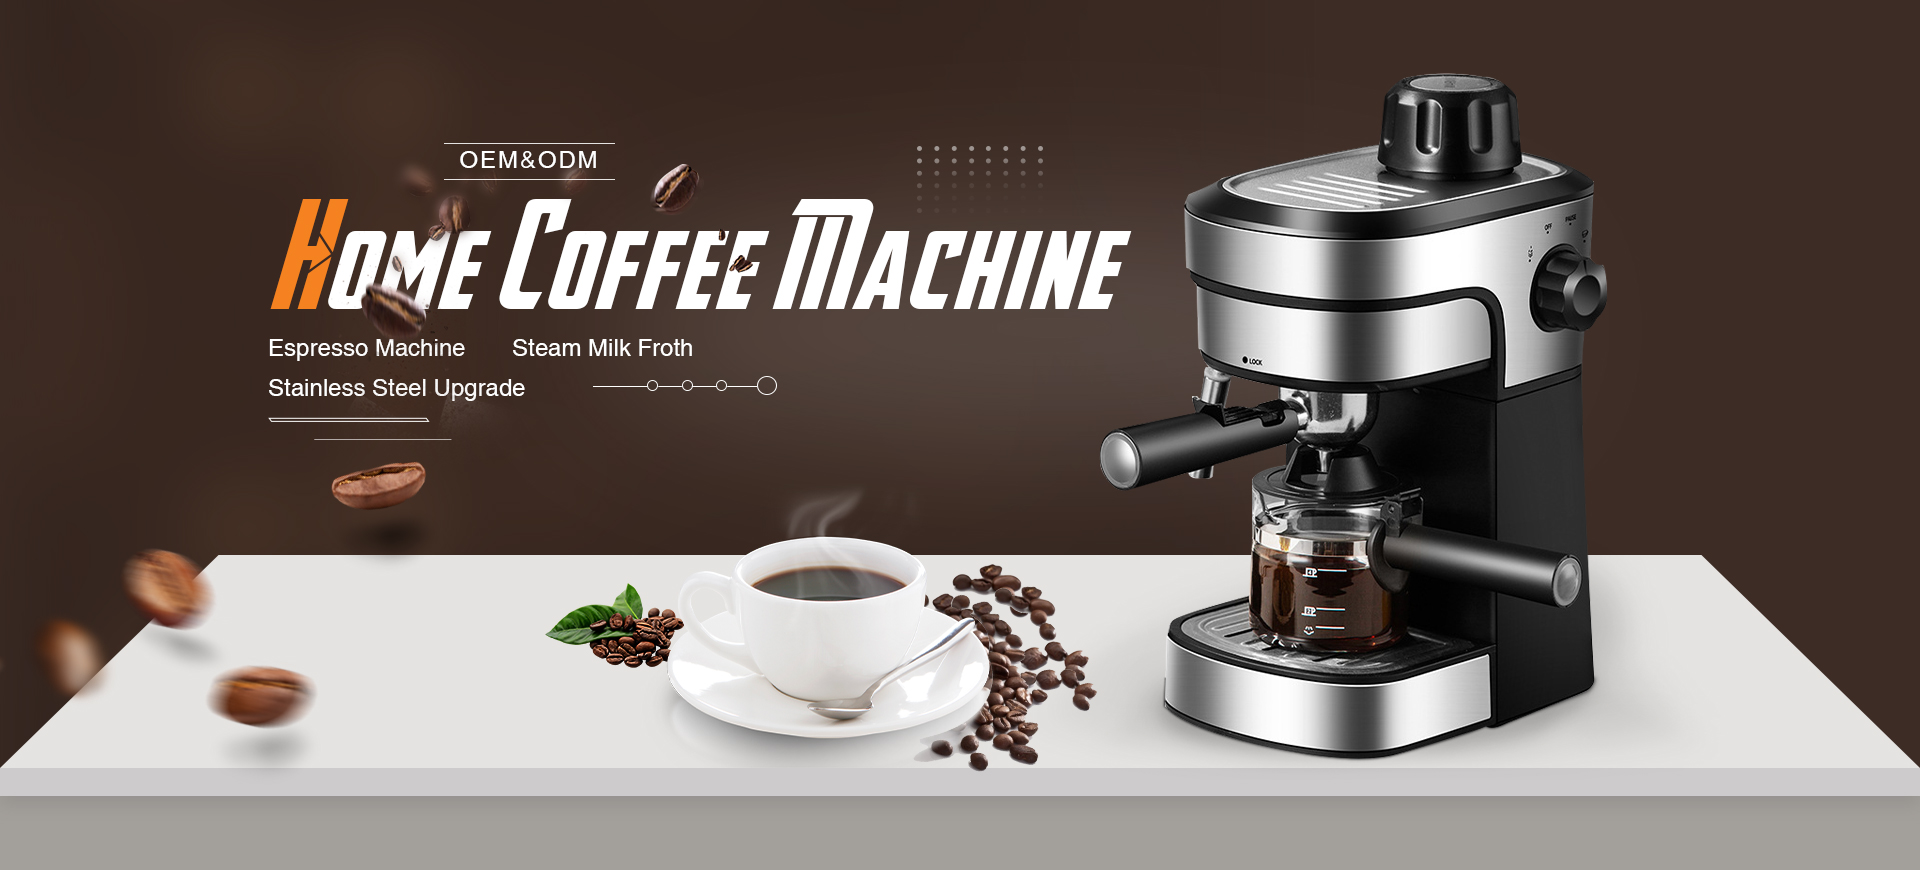 Meilleure machine à café domestique